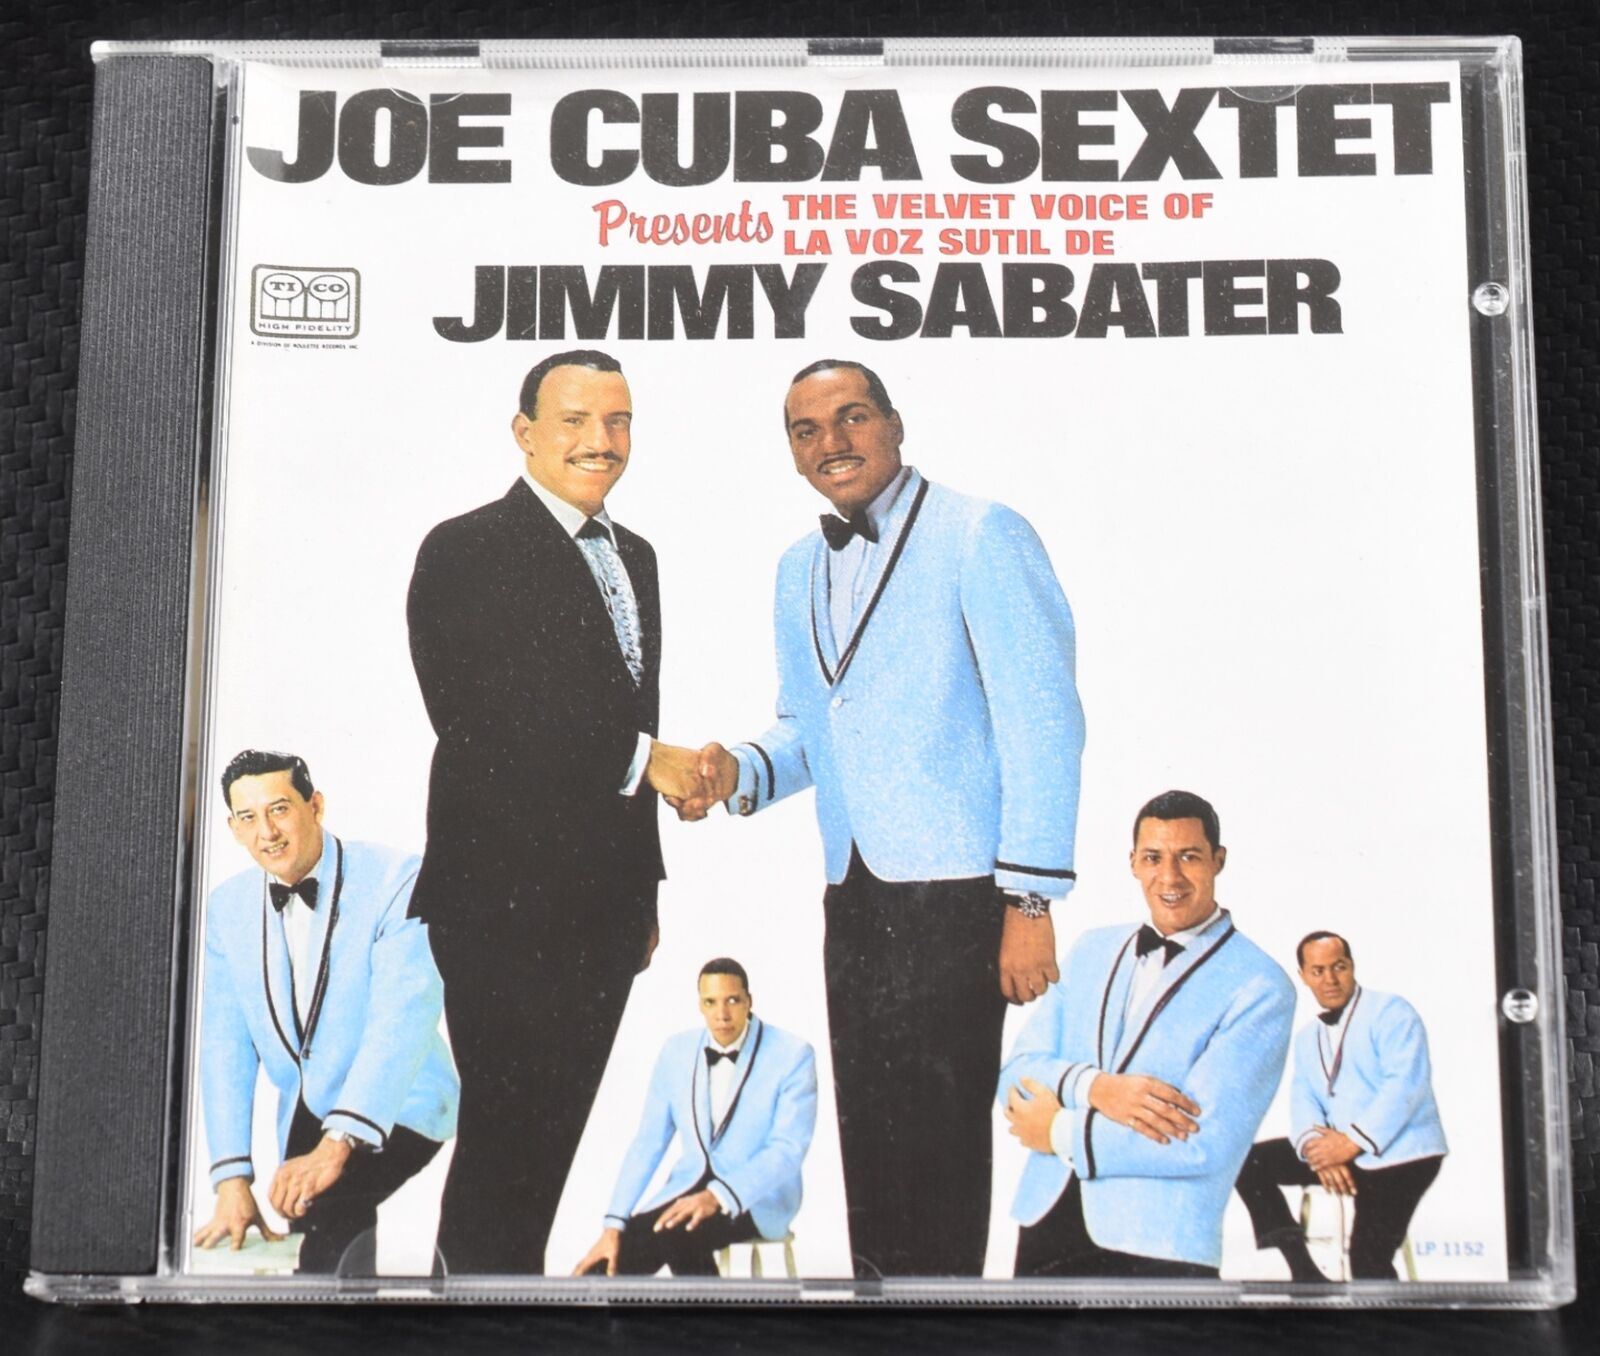 Joe Cuba Sextet Presents: The Velvet Voice of La Voz Sutil De Jimmy Sabater (CD)